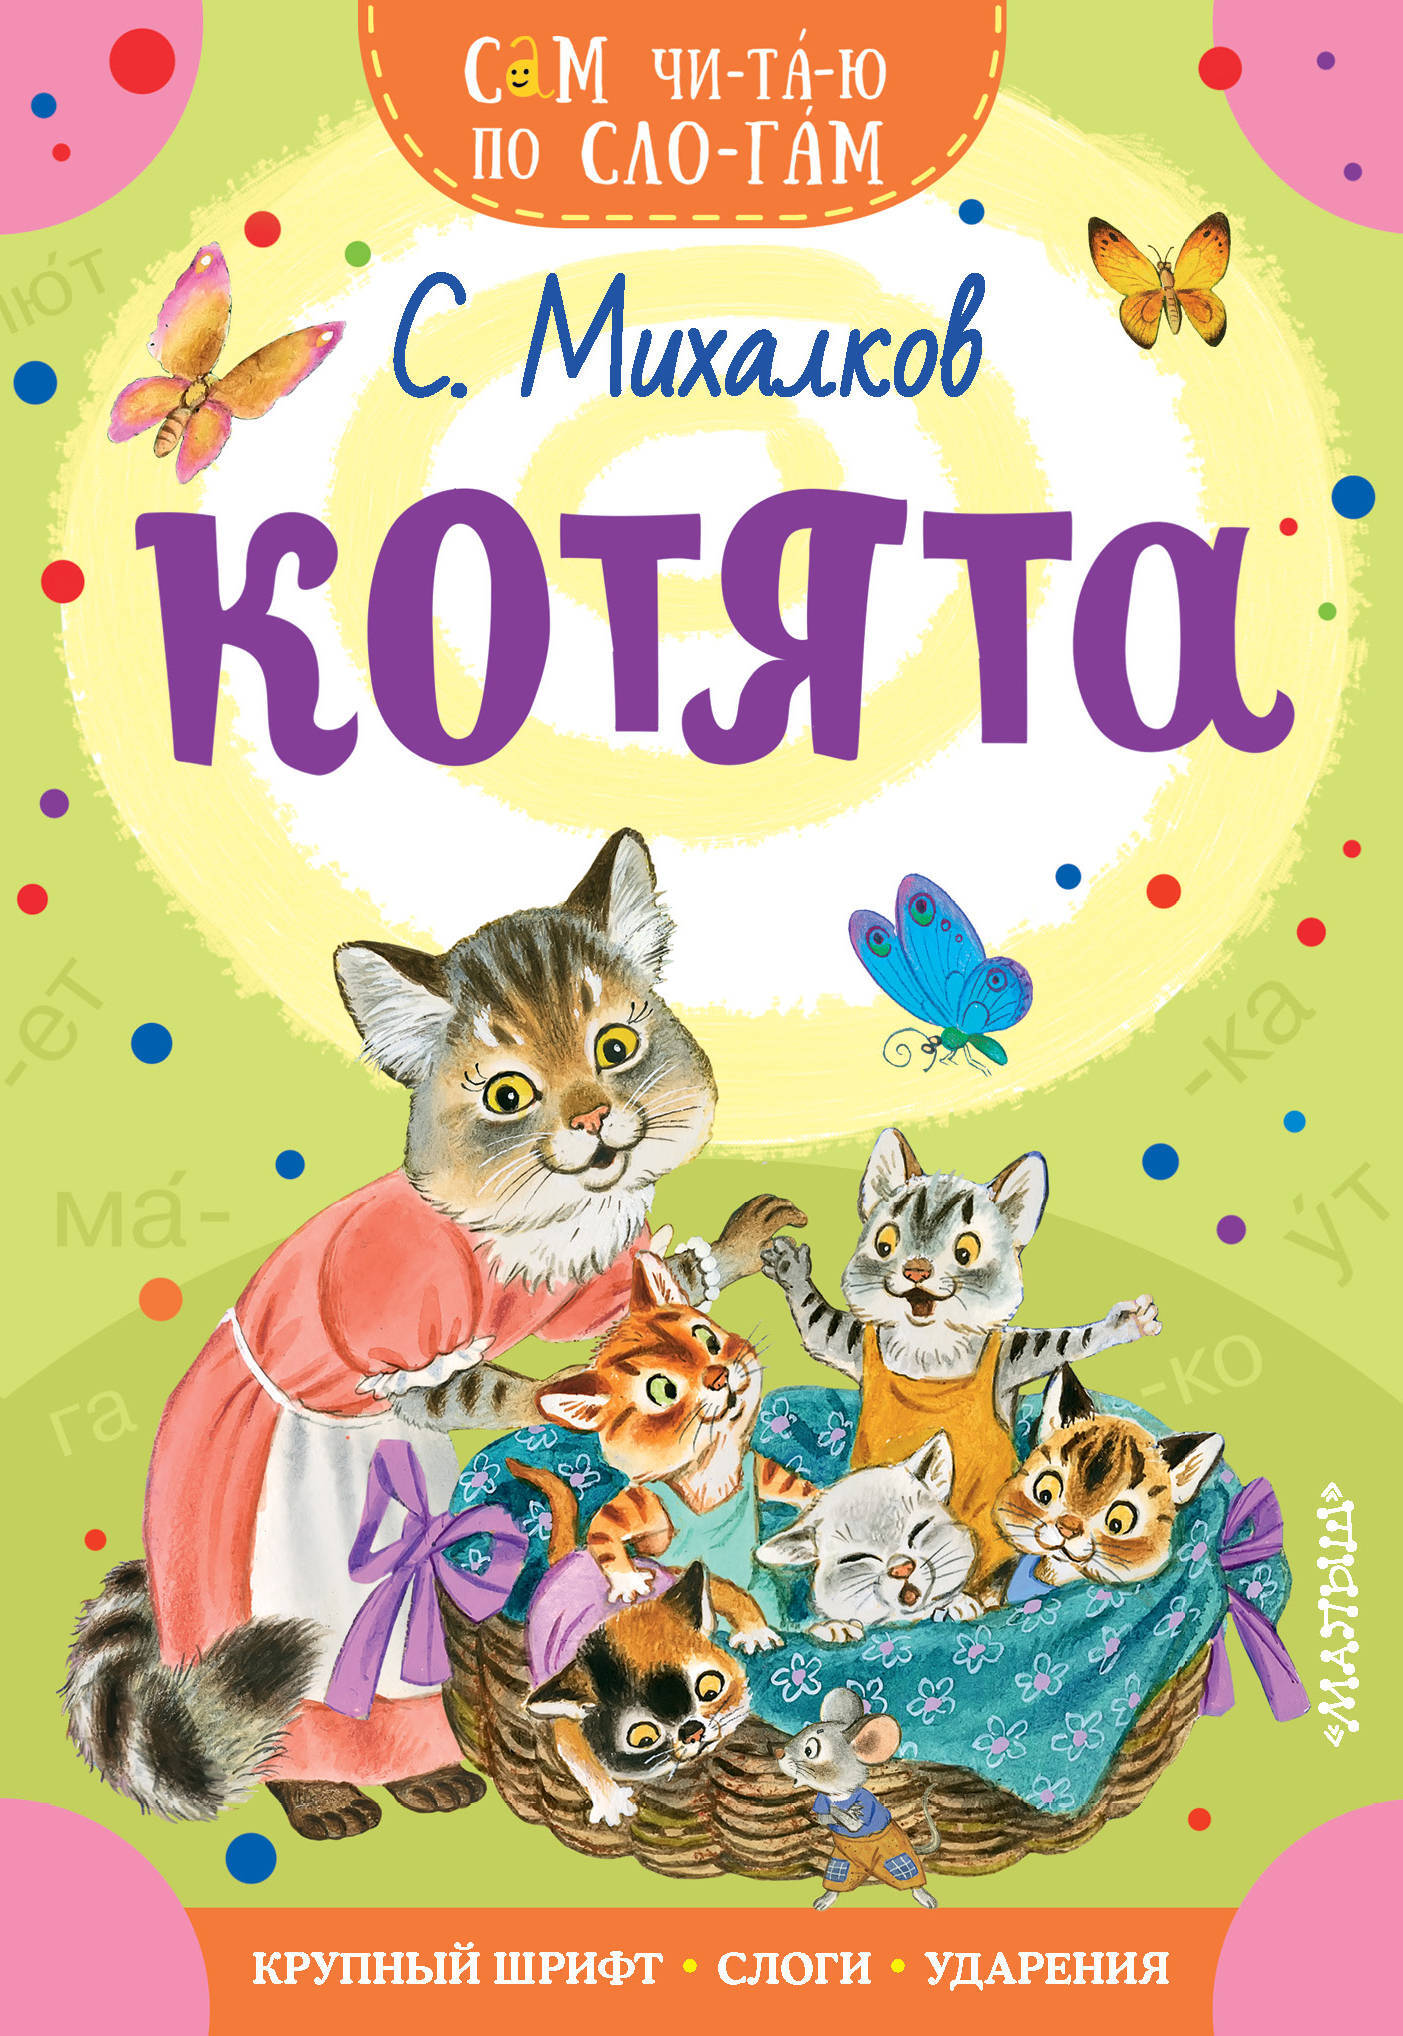 Котята михалкова читать. Книги Михалкова для детей. Обложка книги котята Михалков.